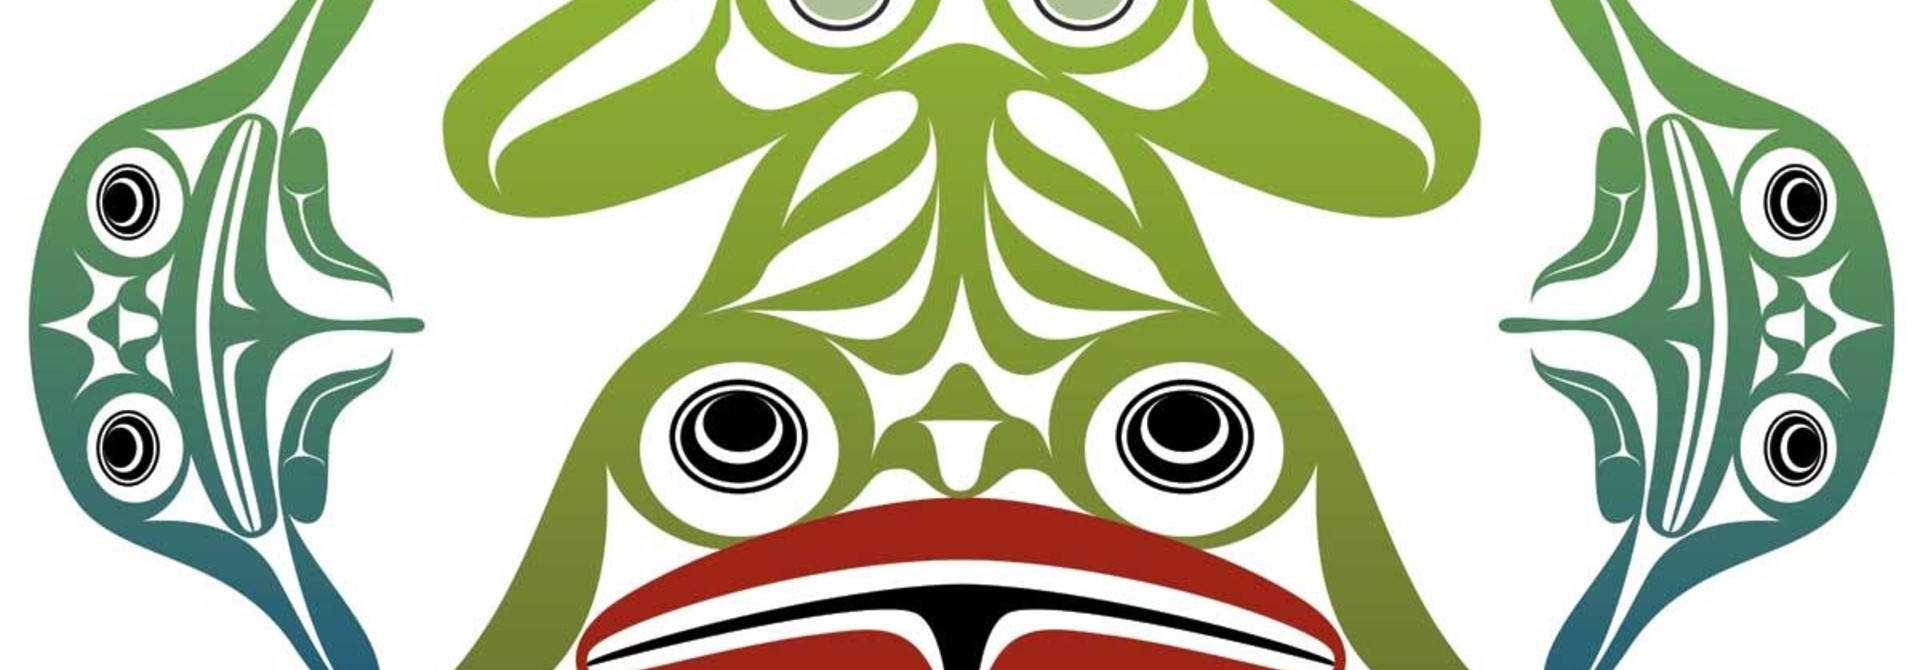 Art Card-Frog Circle by Mark Preston